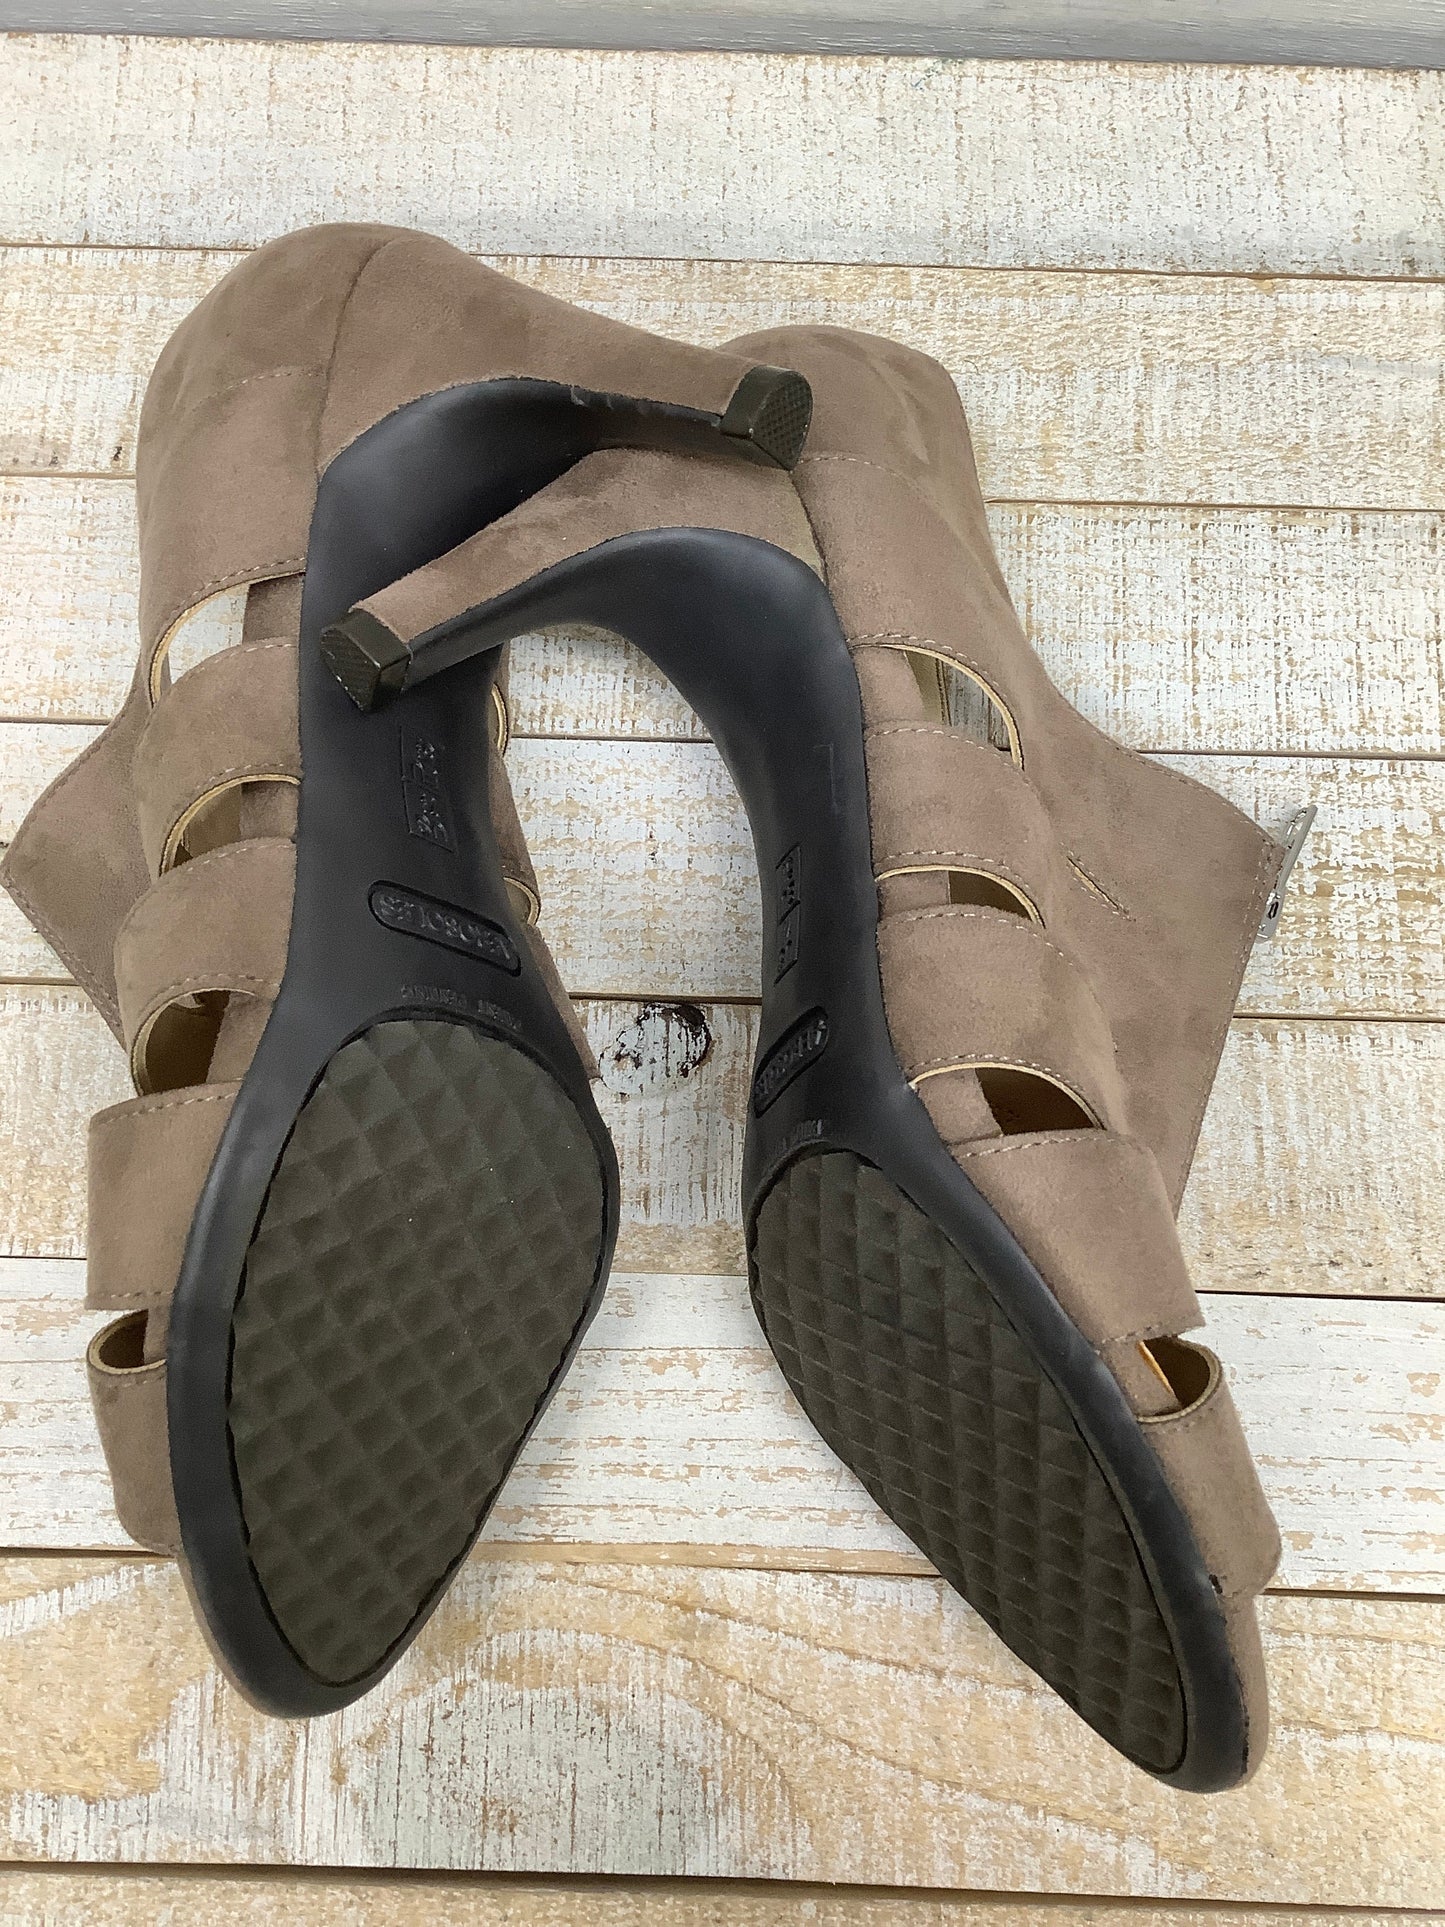 Sandals Heels Stiletto By Aerosoles  Size: 7.5